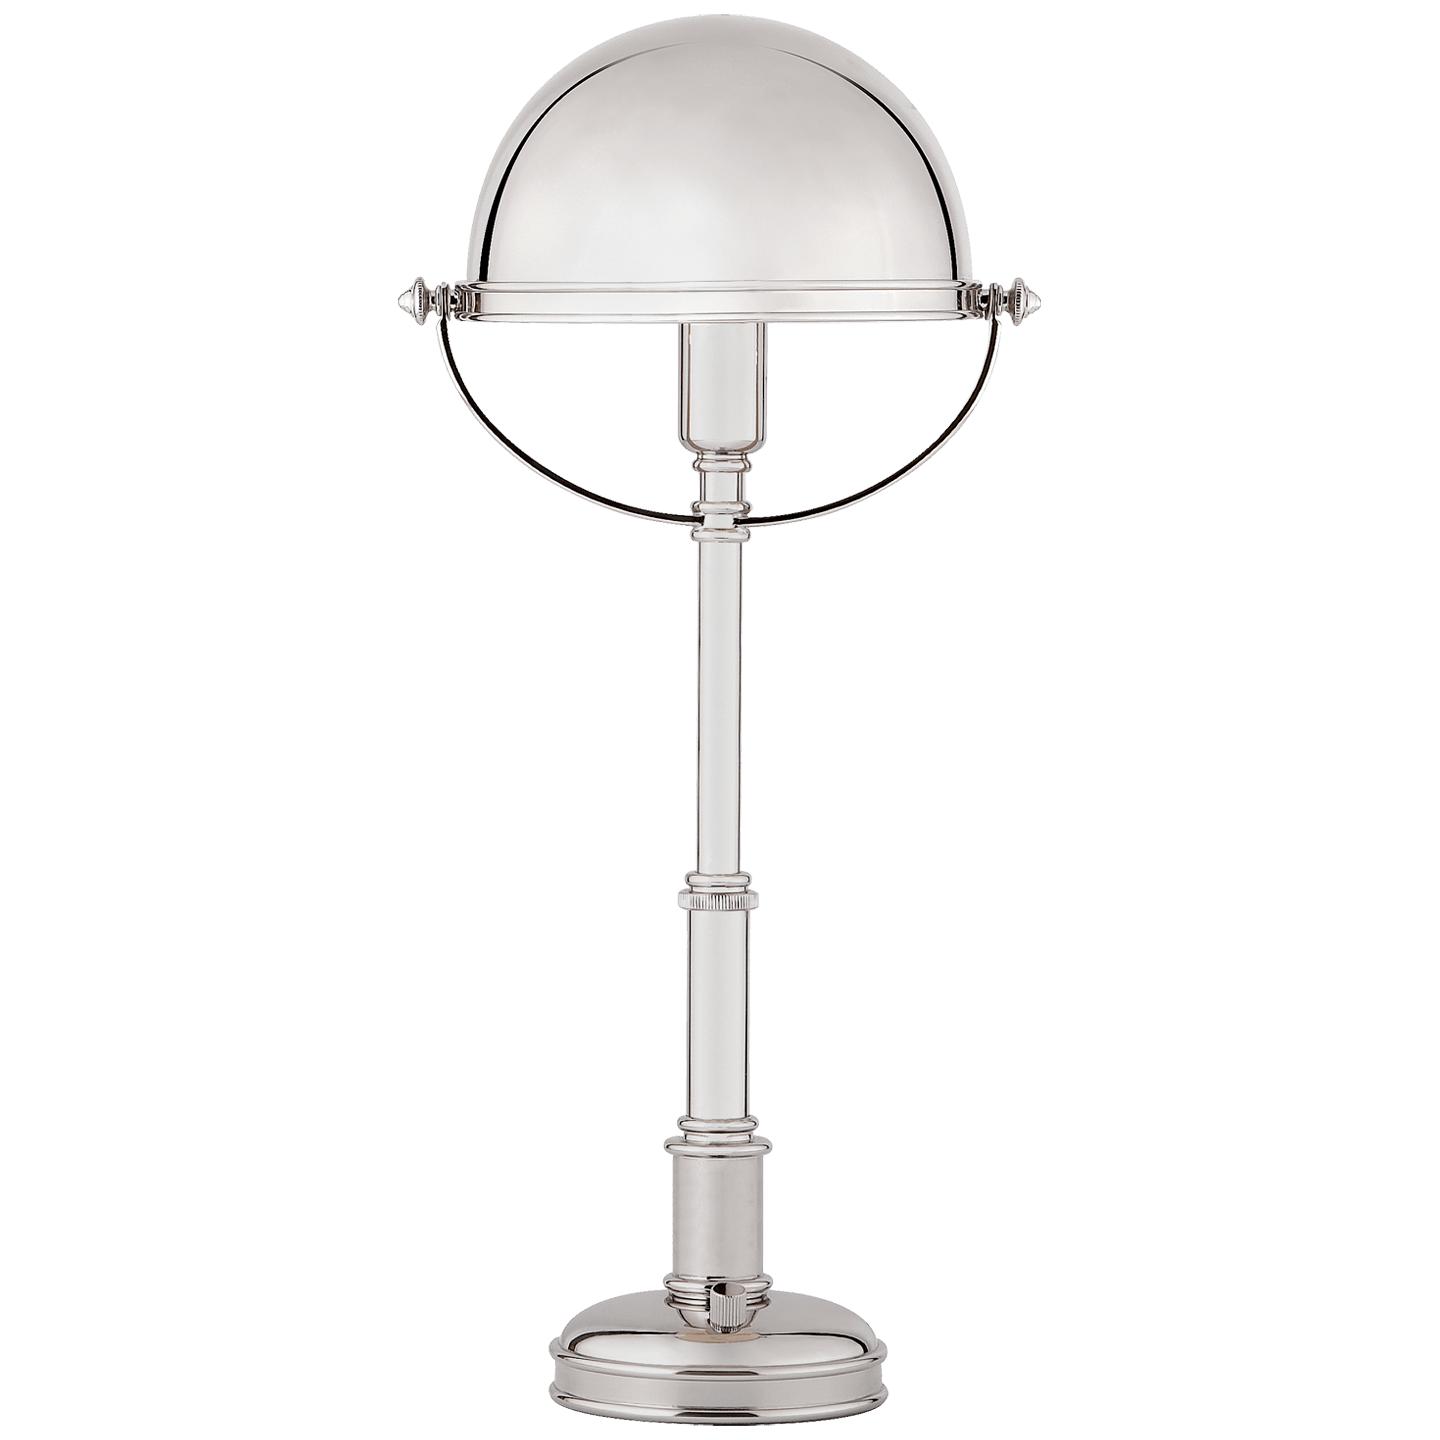 Купить Настольная лампа Carthage Mini Lamp в интернет-магазине roooms.ru